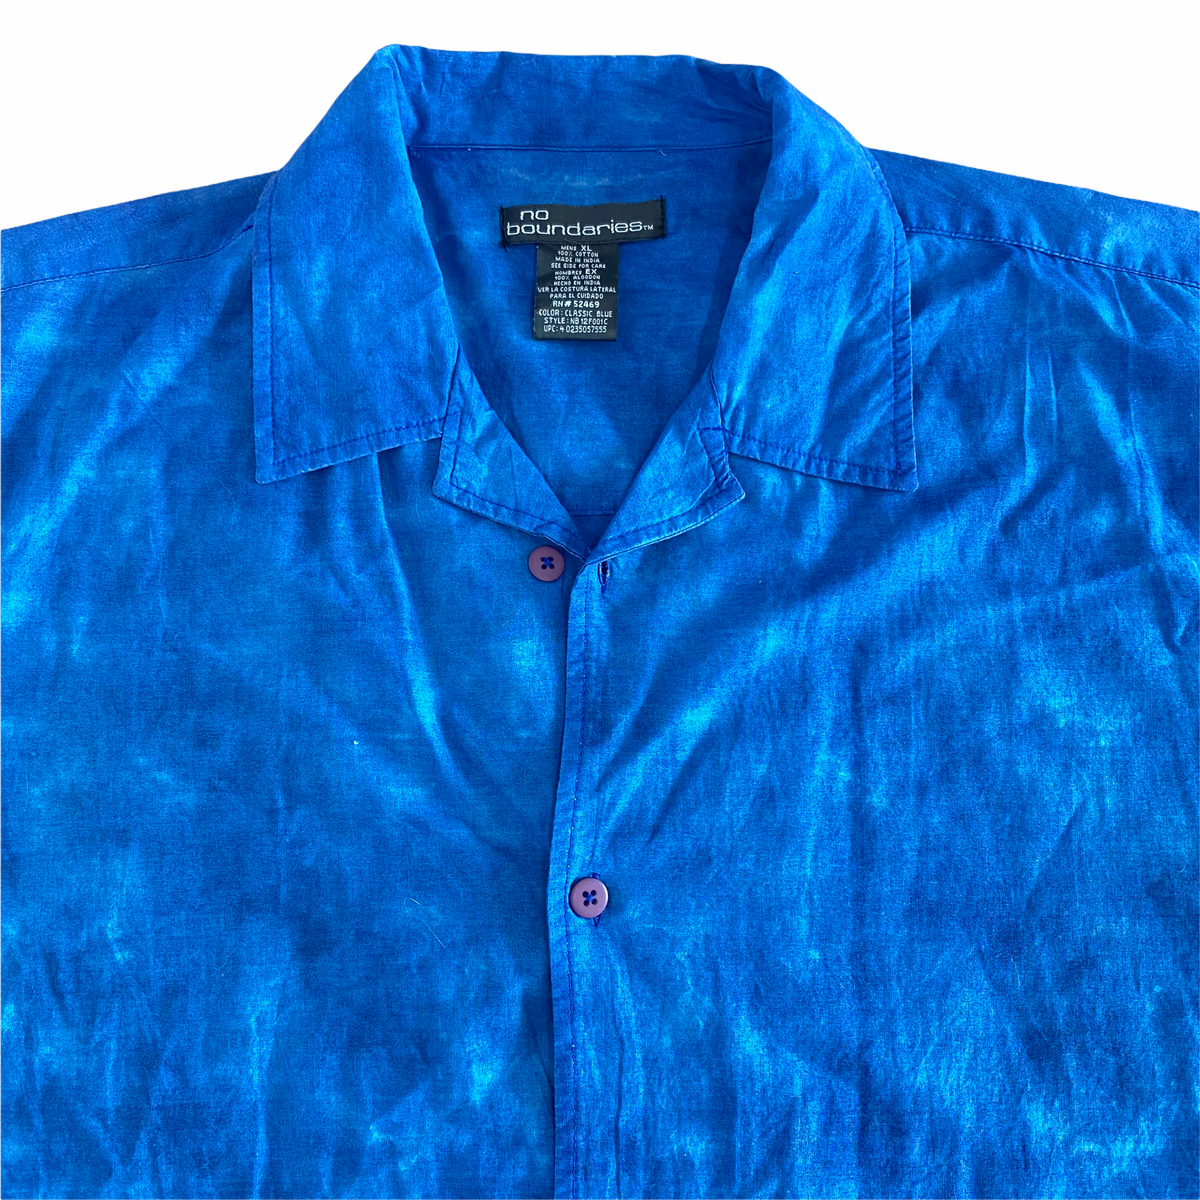 Vintage No Boundaries Flame Fire Button Up Shirt 90s Y2k Men's Size L